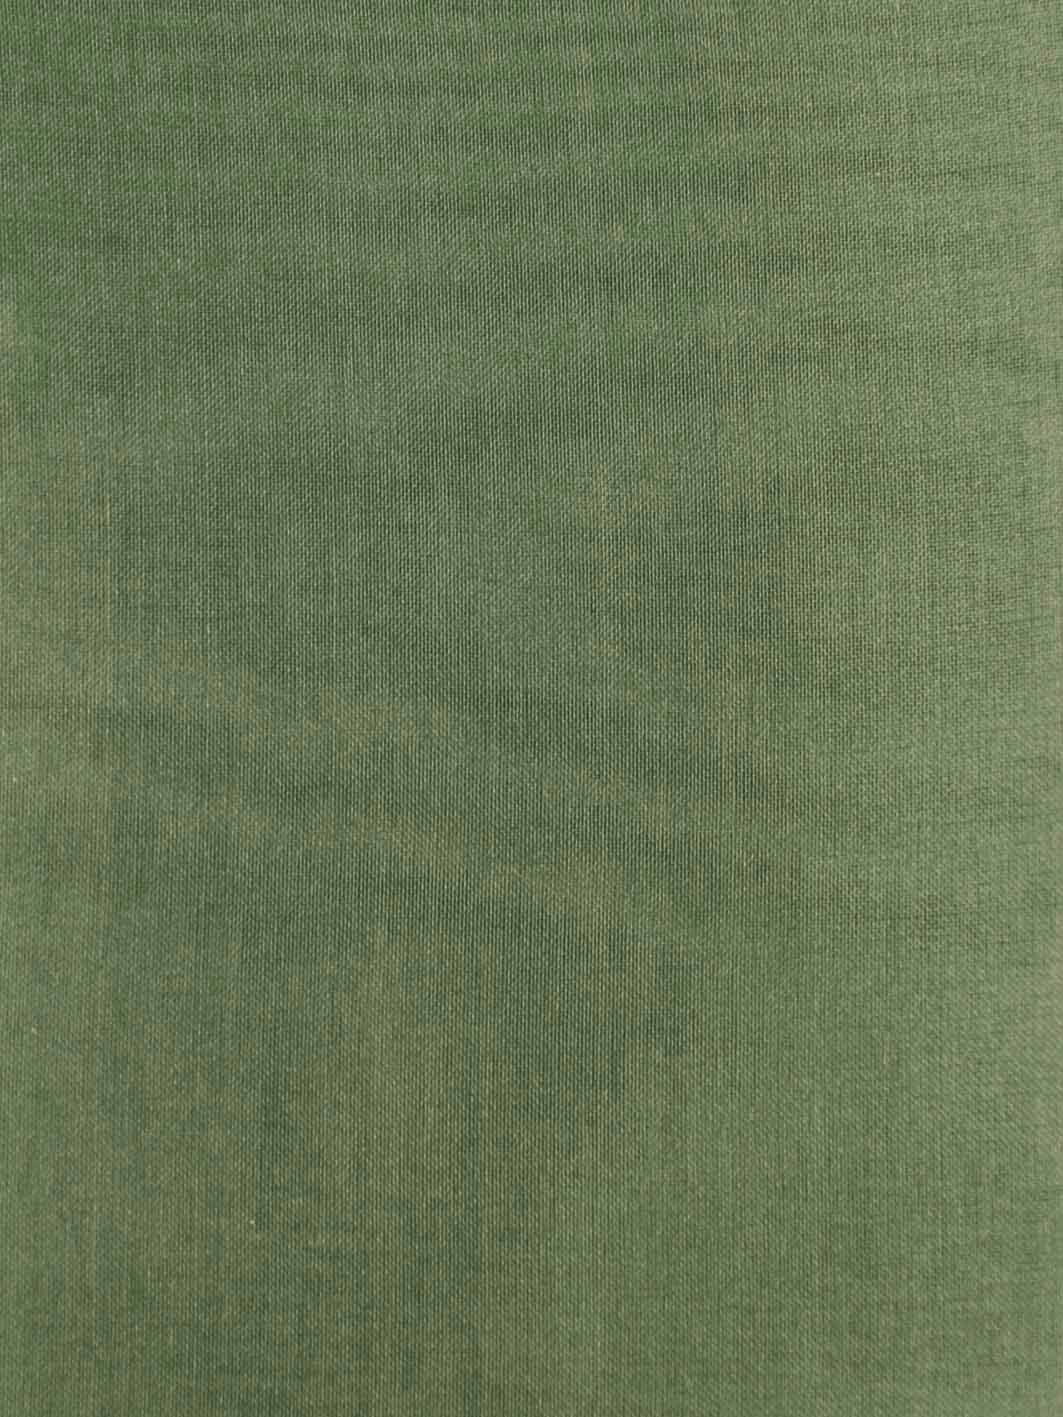 Silk Organza (137cm/54") - Evolution (Darker Colours)